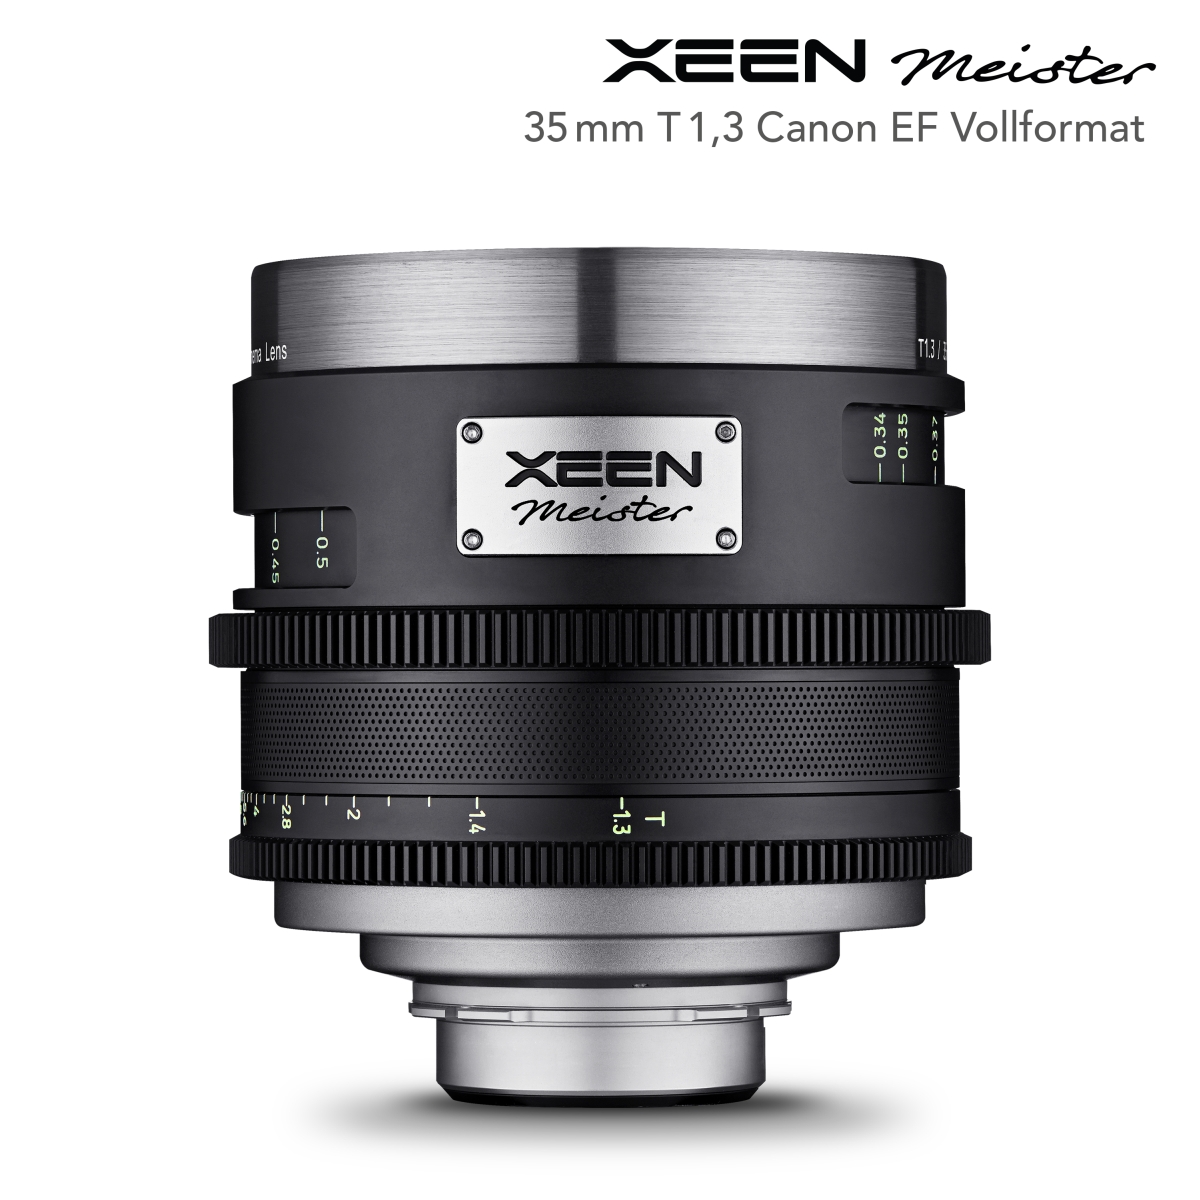 XEEN Meister 35mm T1.3 Canon EF Vollformat